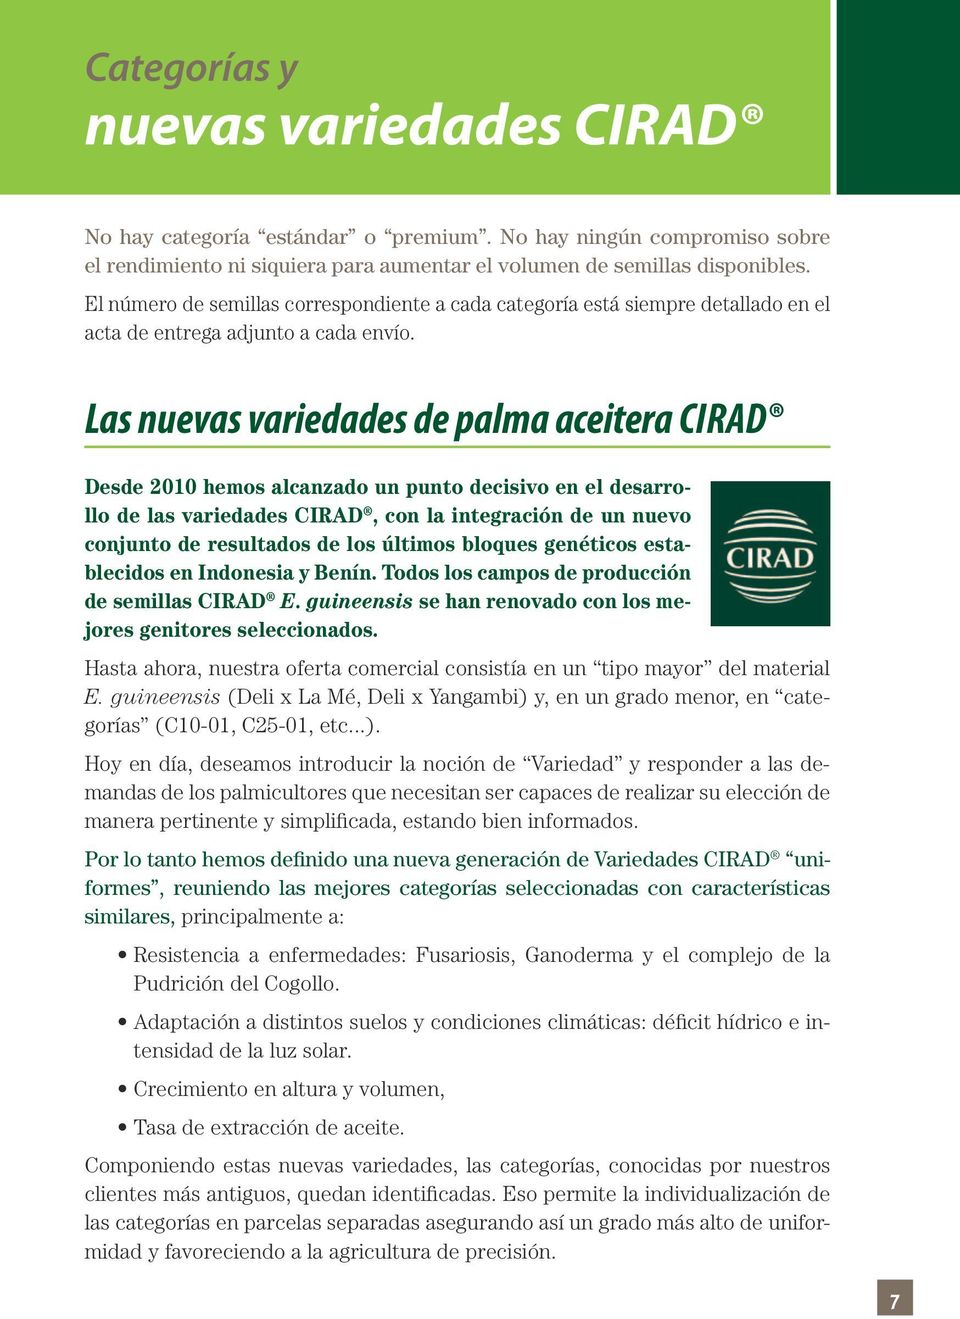 Las nuevas variedades de palma aceitera CIRAD Desde 2010 hemos alcanzado un punto decisivo en el desarrollo de las variedades CIRAD, con la integración de un nuevo conjunto de resultados de los